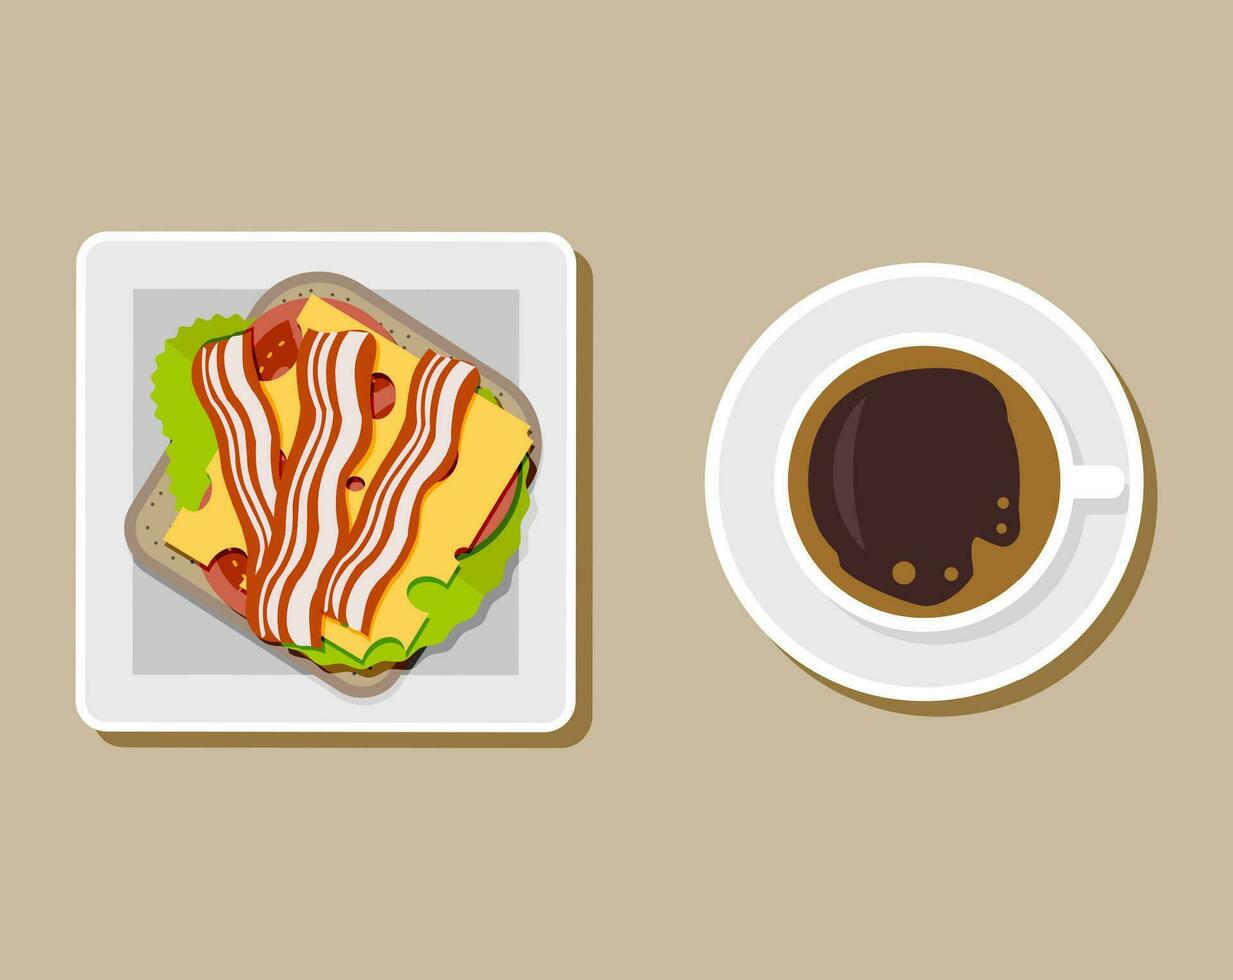 kaffe kopp med smörgås topp se, kaffe ha sönder, frukost måltid, snabb mat mellanmål, burger och te råna på tallrik. ost, tomat. bröd, skinka, sallad. vektor illustration i platt stil på brun bakgrund